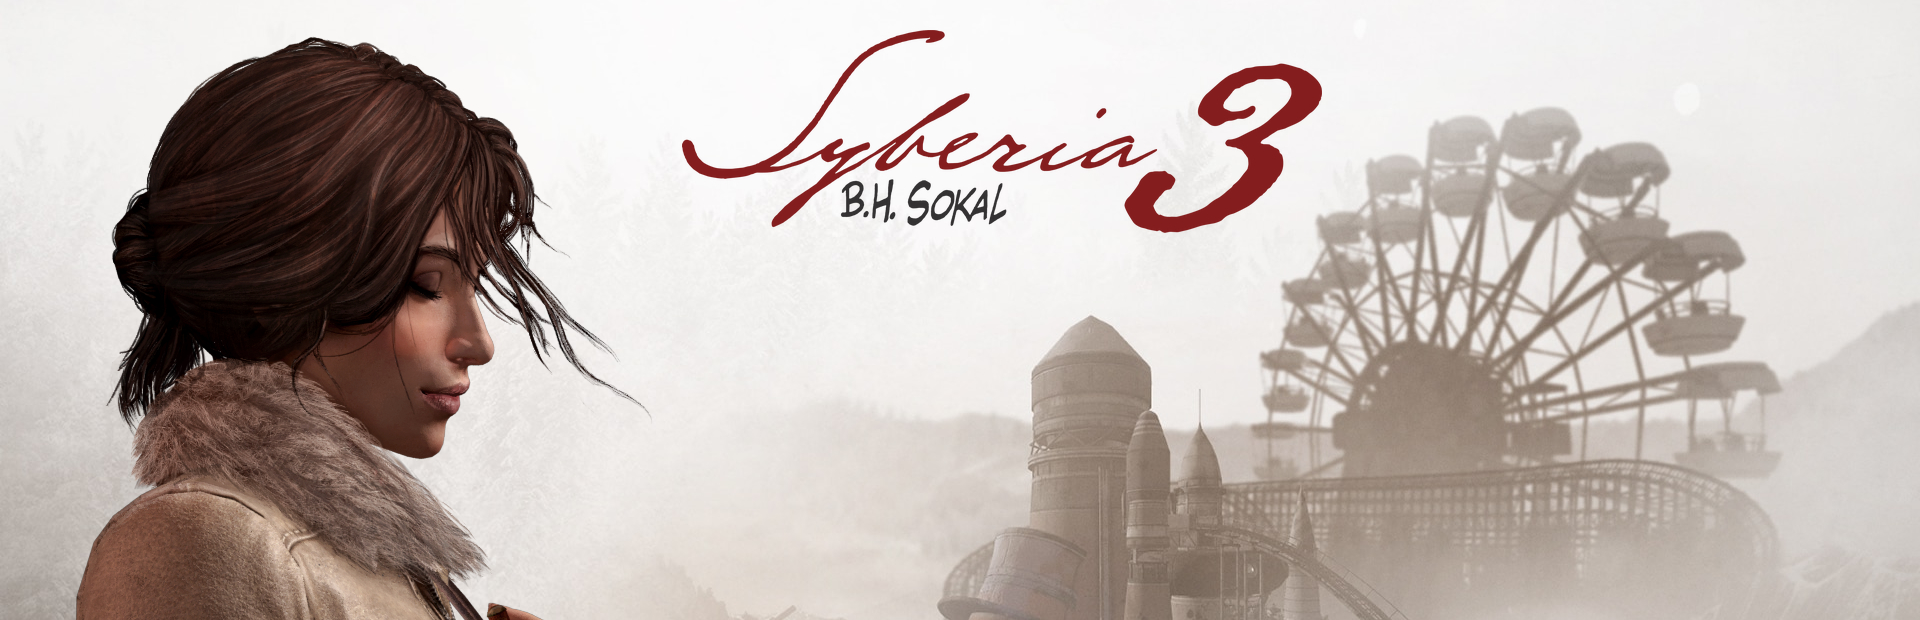 دانلود بازی Syberia 3 برای پی سی | گیمباتو